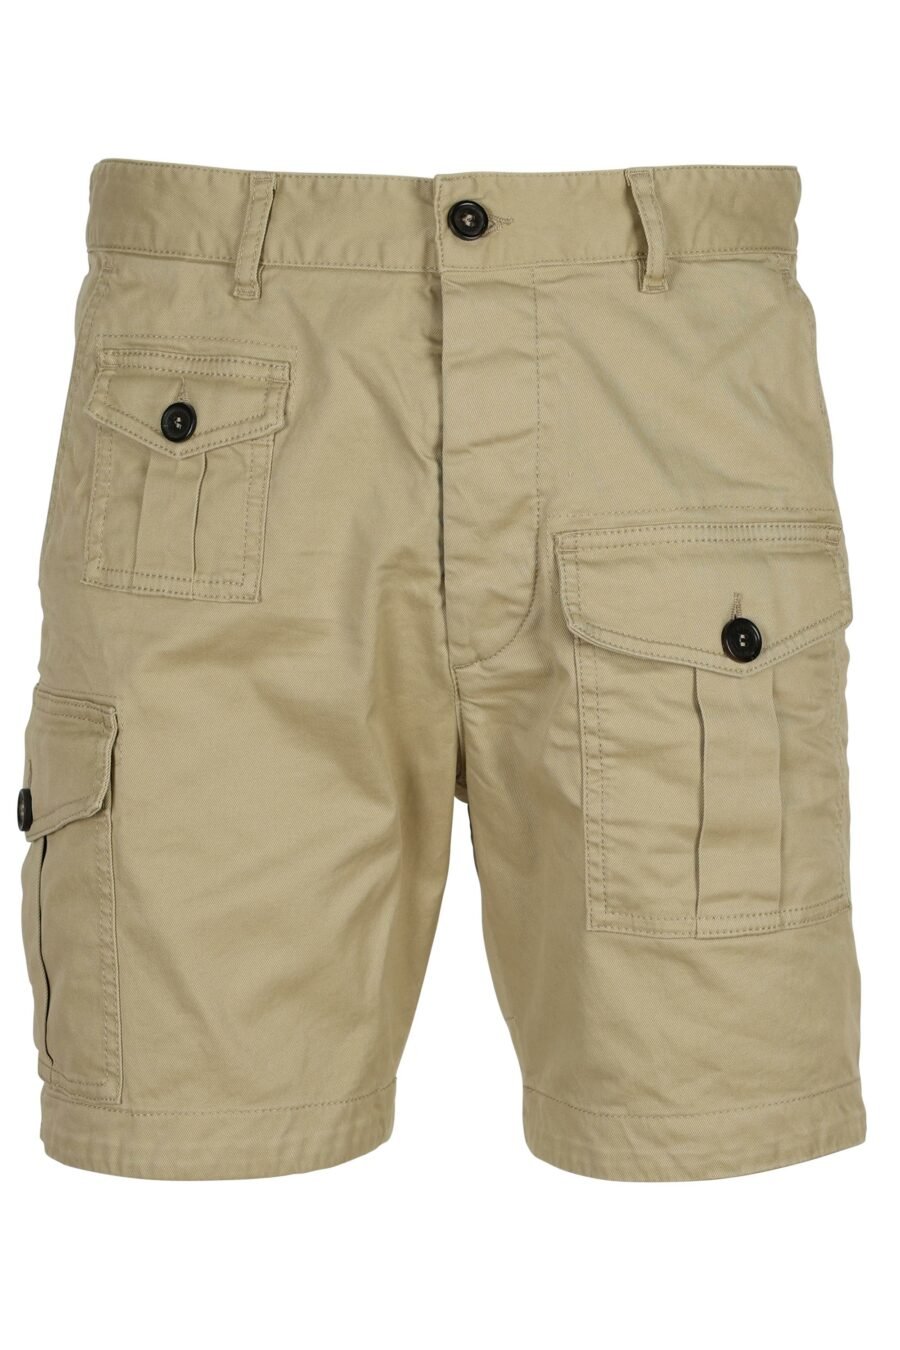 Pantalón corto beige "sexy cargo shorts" - 8052134622605